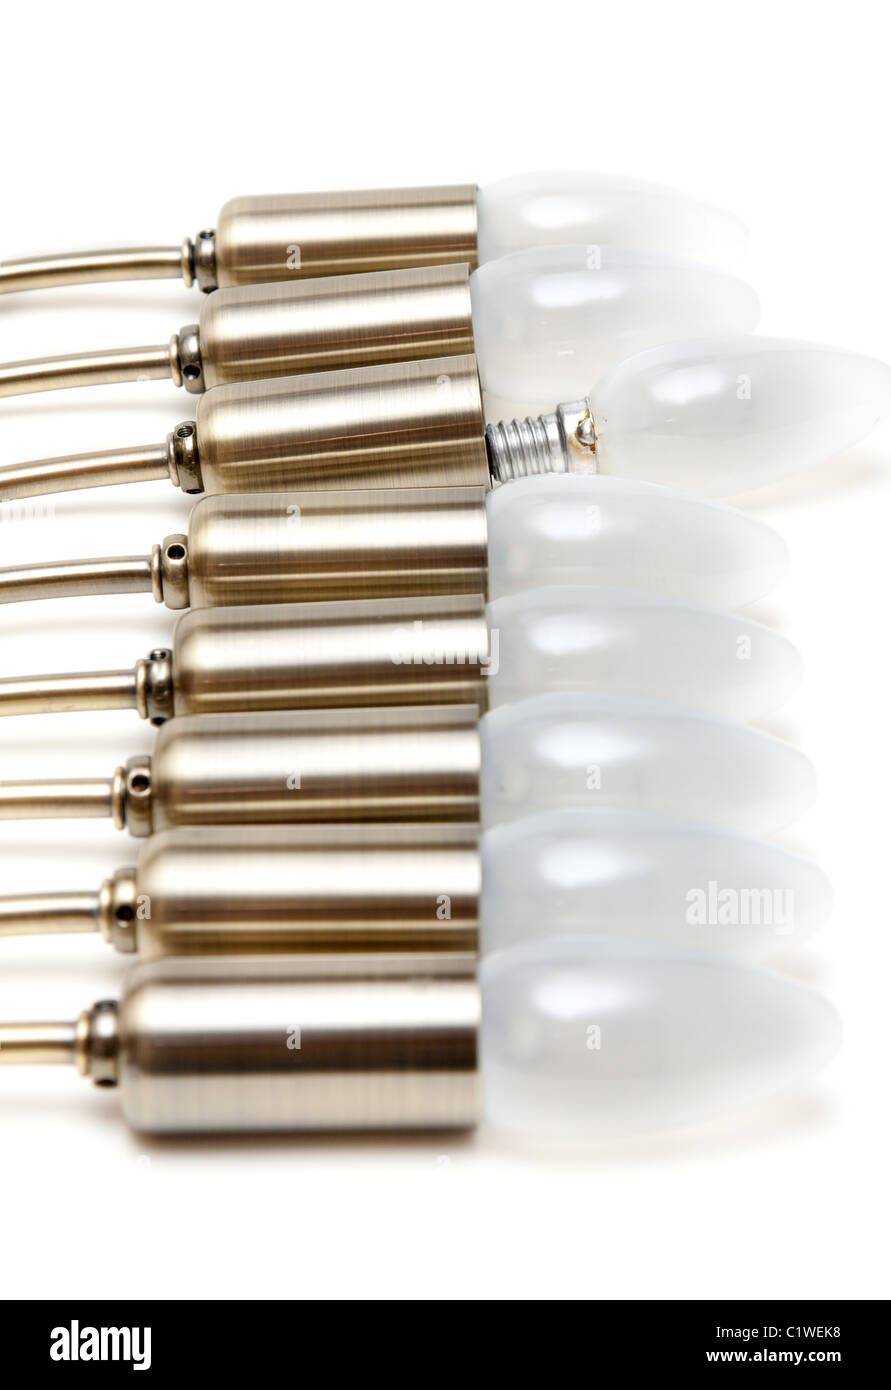 Ampoules électriques en patron d'or mis en ligne sur fond blanc Banque D'Images